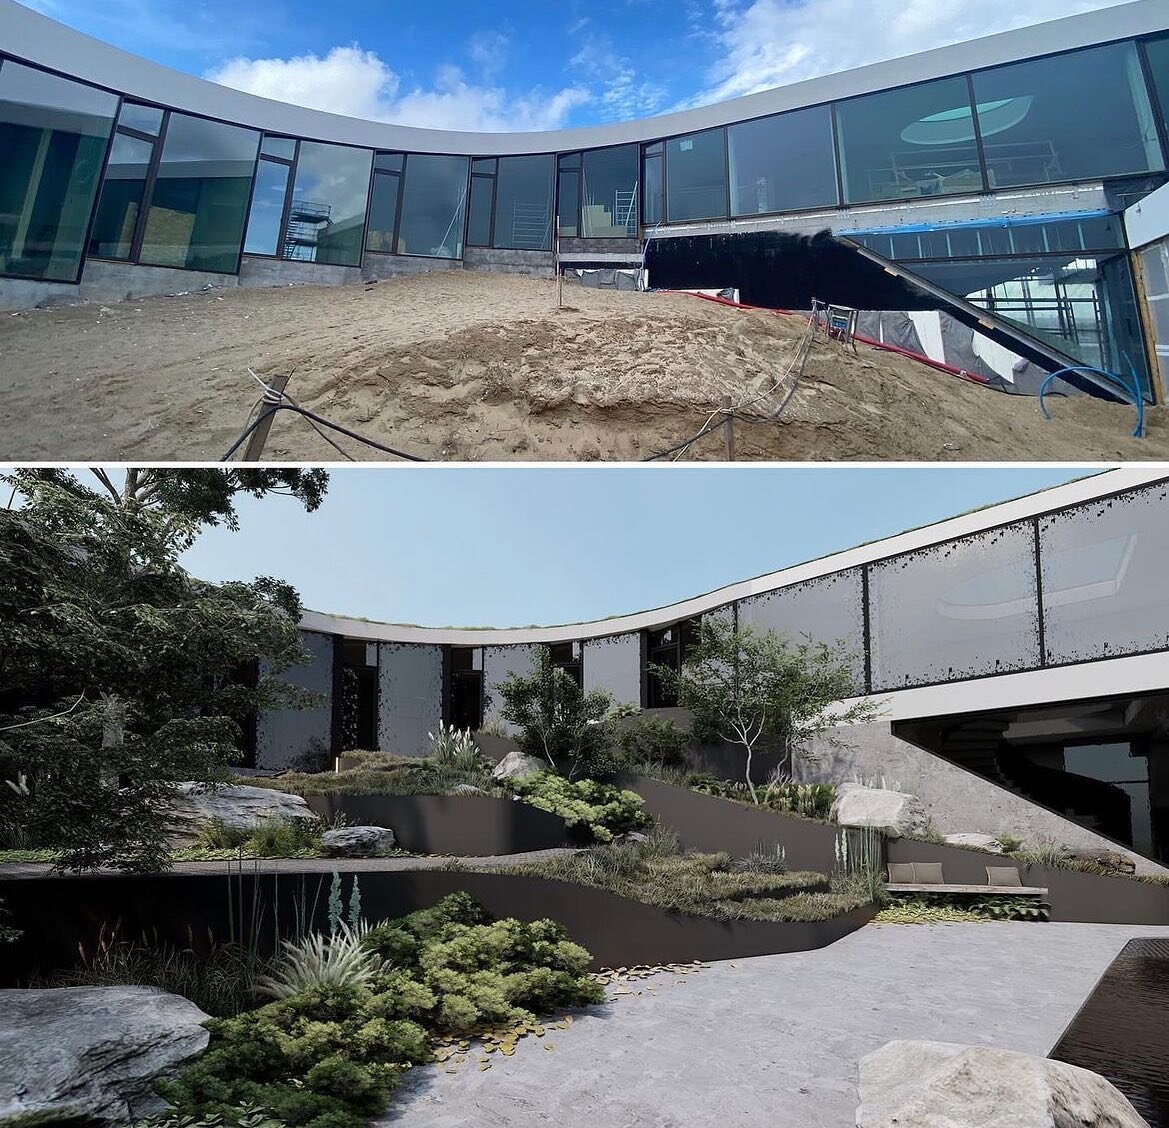 Villa GUG [ @bjarkeingels ] ___ landscape by @conceptgardens.eu 🌿
-
-
Before &amp; After